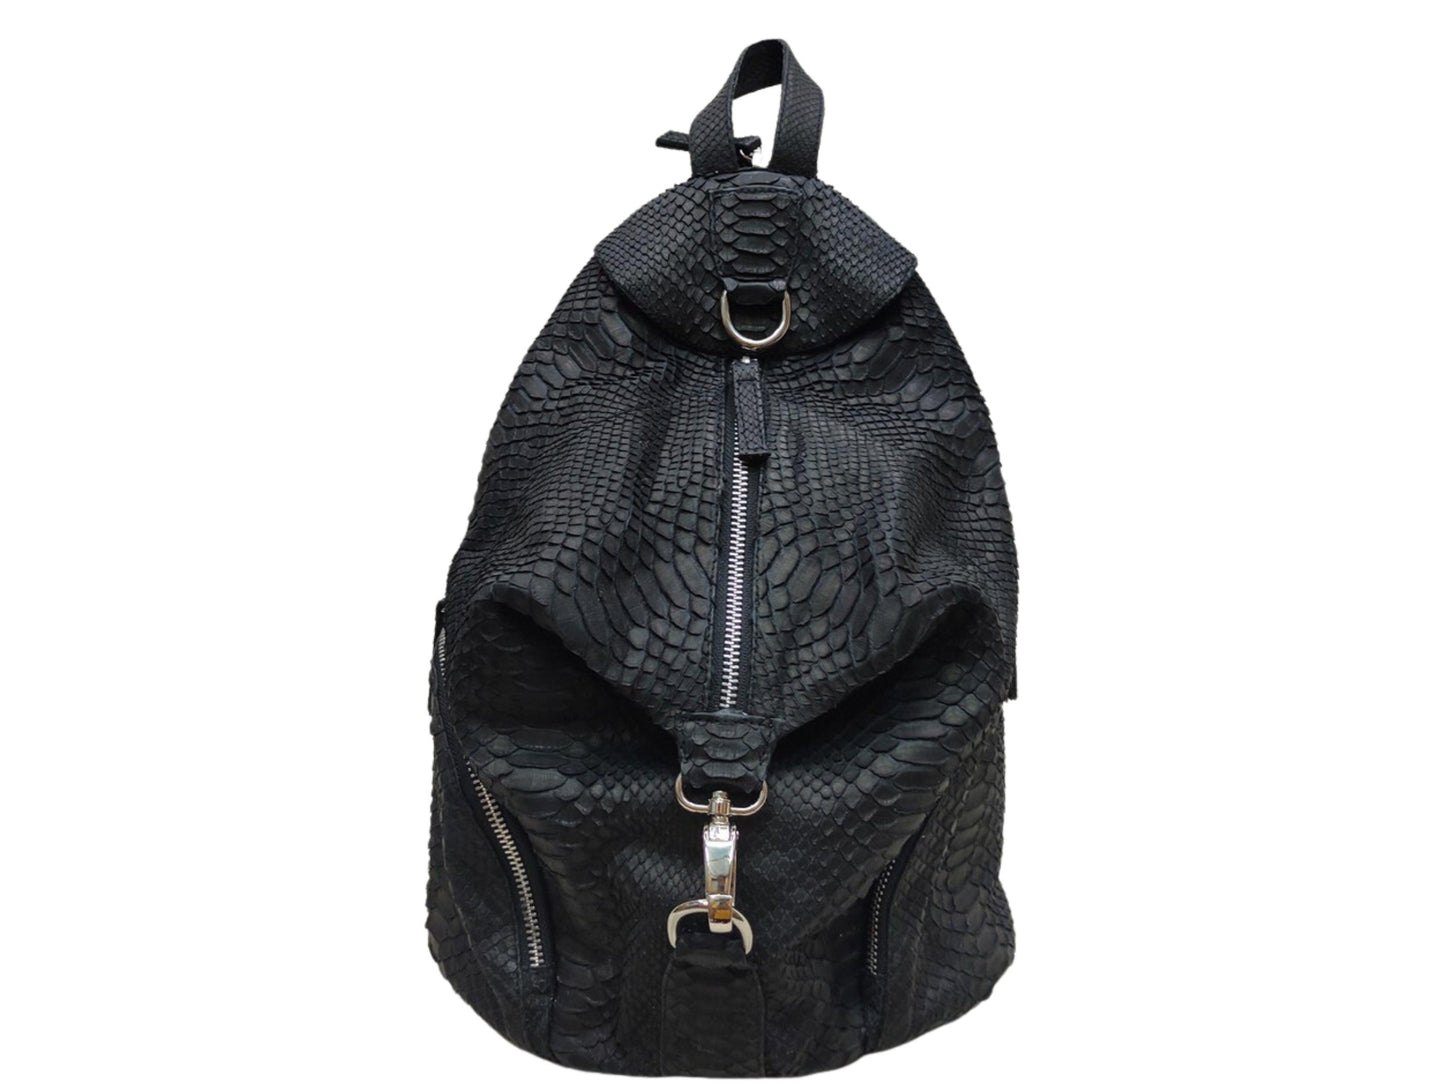 Backpacks Handmade Snakeskin Backpack, Python Travel Bag, School Backpack, Unique Gift Black Python Jacket by LFM Fashion